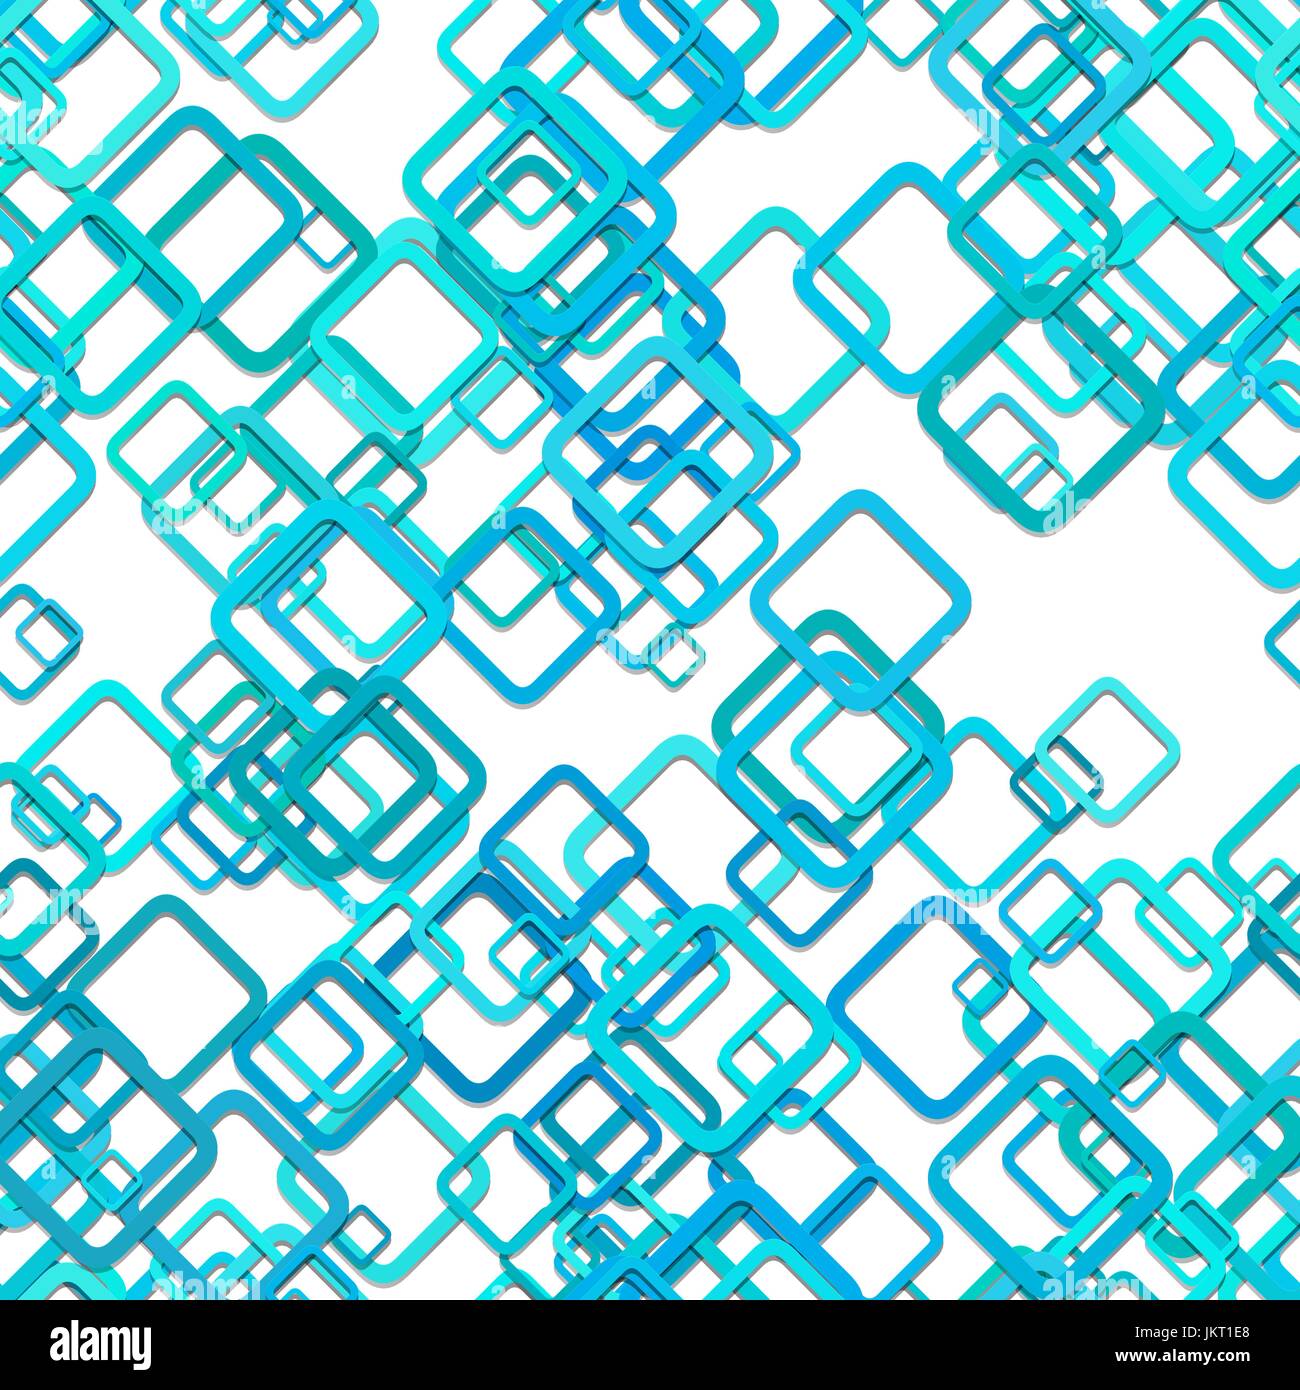 Nahtlose quadratische Hintergrundmuster - Vektor-Illustration von Diagonale Quadrate in blaugrünen Tönen mit Schatteneffekt Stock Vektor